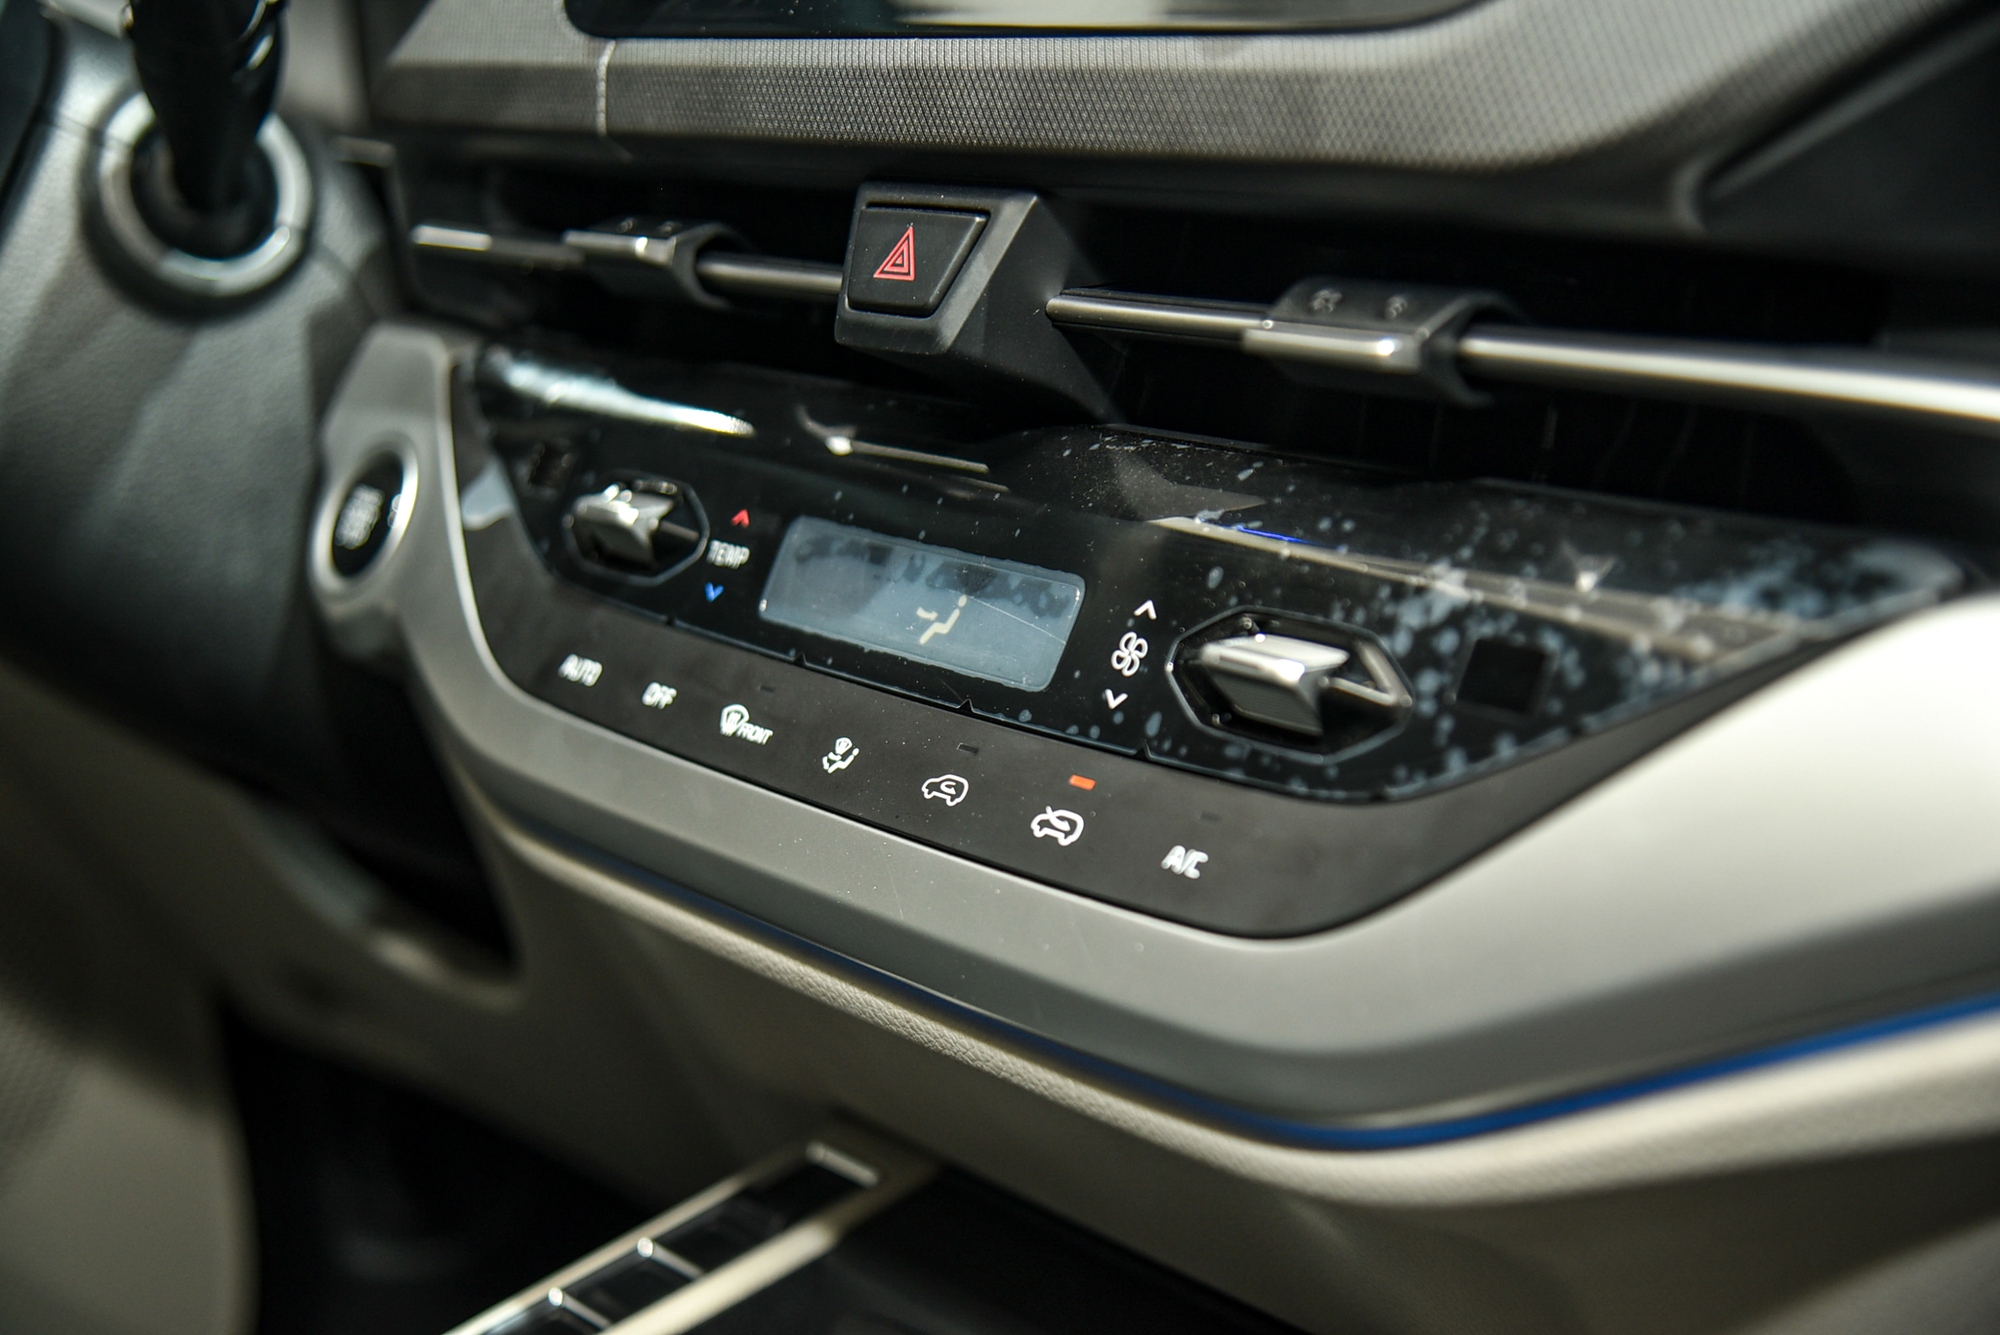 Chi tiết Kia Carens phiên bản xăng 1.5 Luxury: Giá 699 triệu đồng, thiếu nhiều trang bị so với phiên bản cao hơn - Ảnh 10.